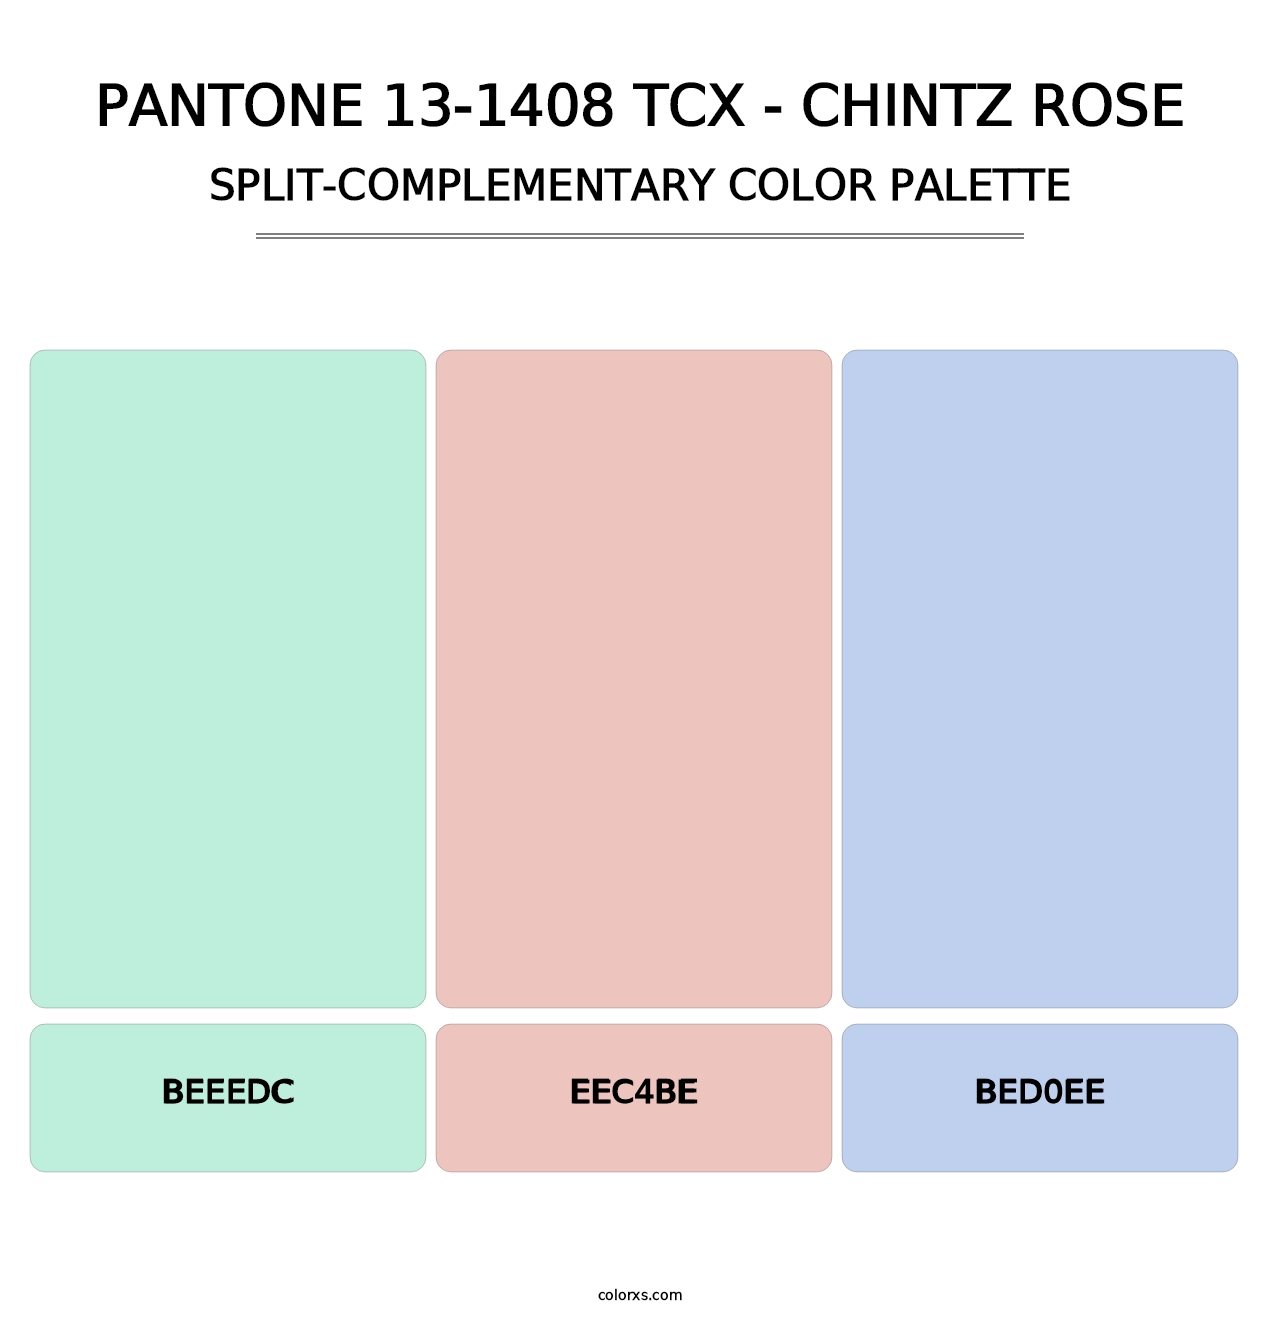 PANTONE 13-1408 TCX - Chintz Rose - Split-Complementary Color Palette